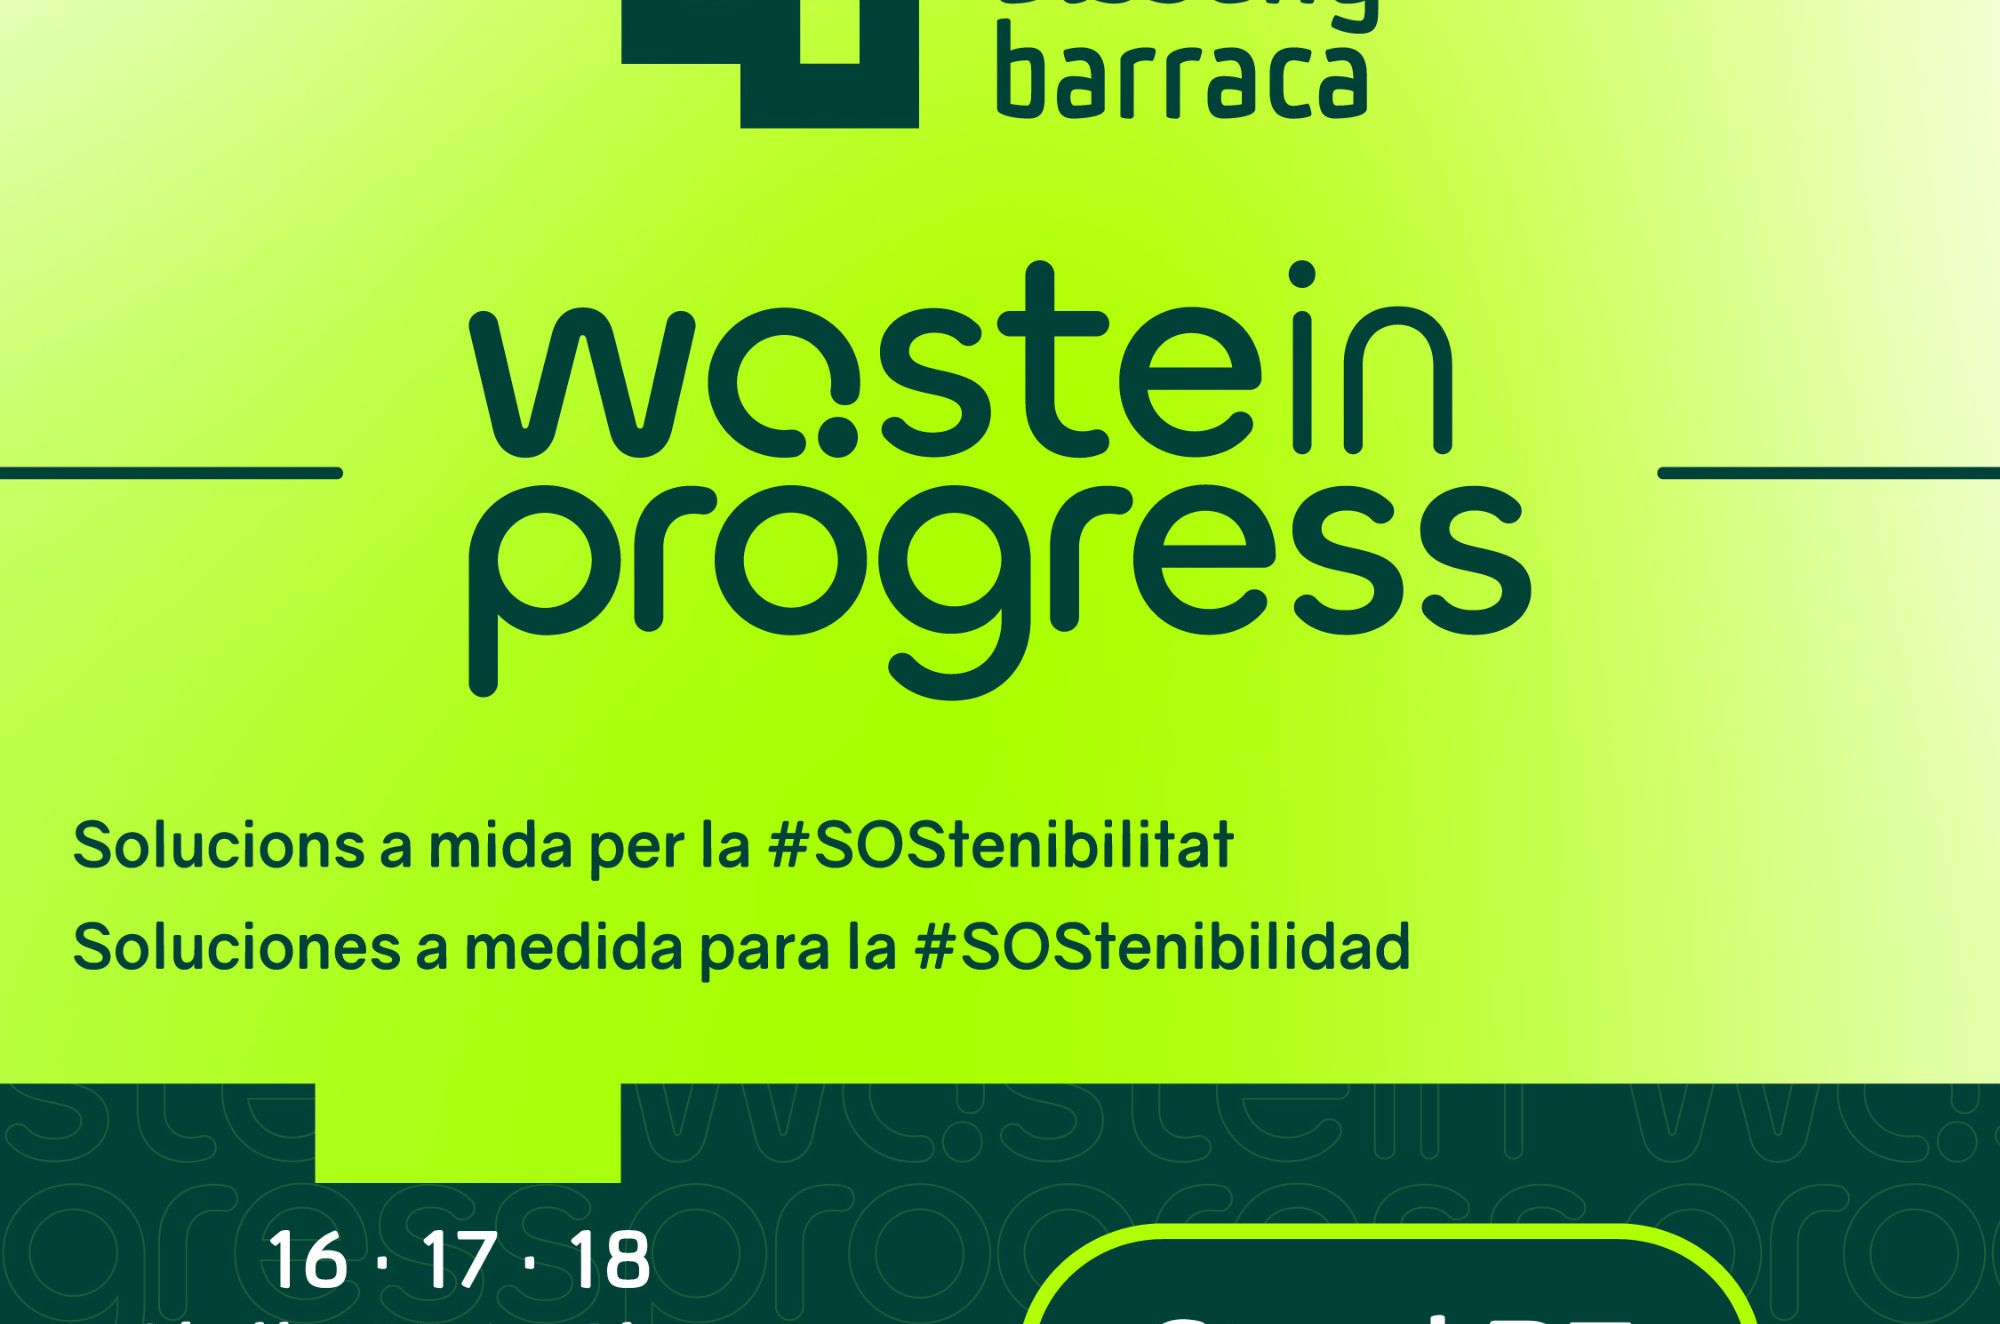 Disseny Barraca ser present a la 6a edici de Wasteinprogress